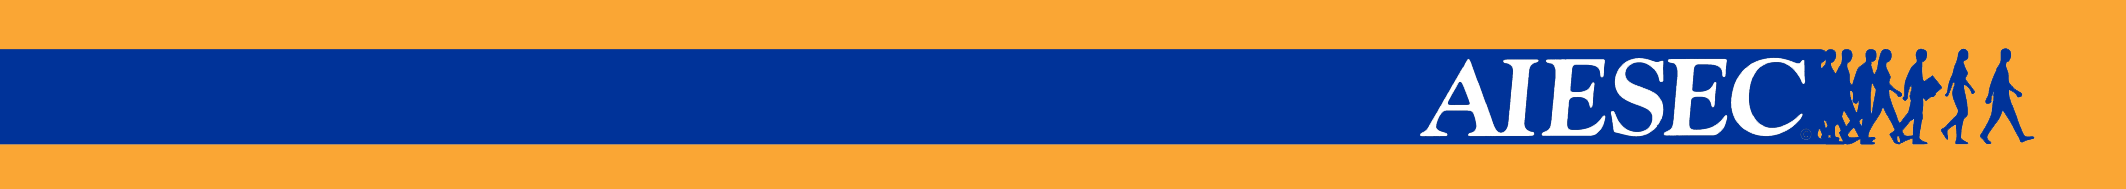 blue_on_orange_long